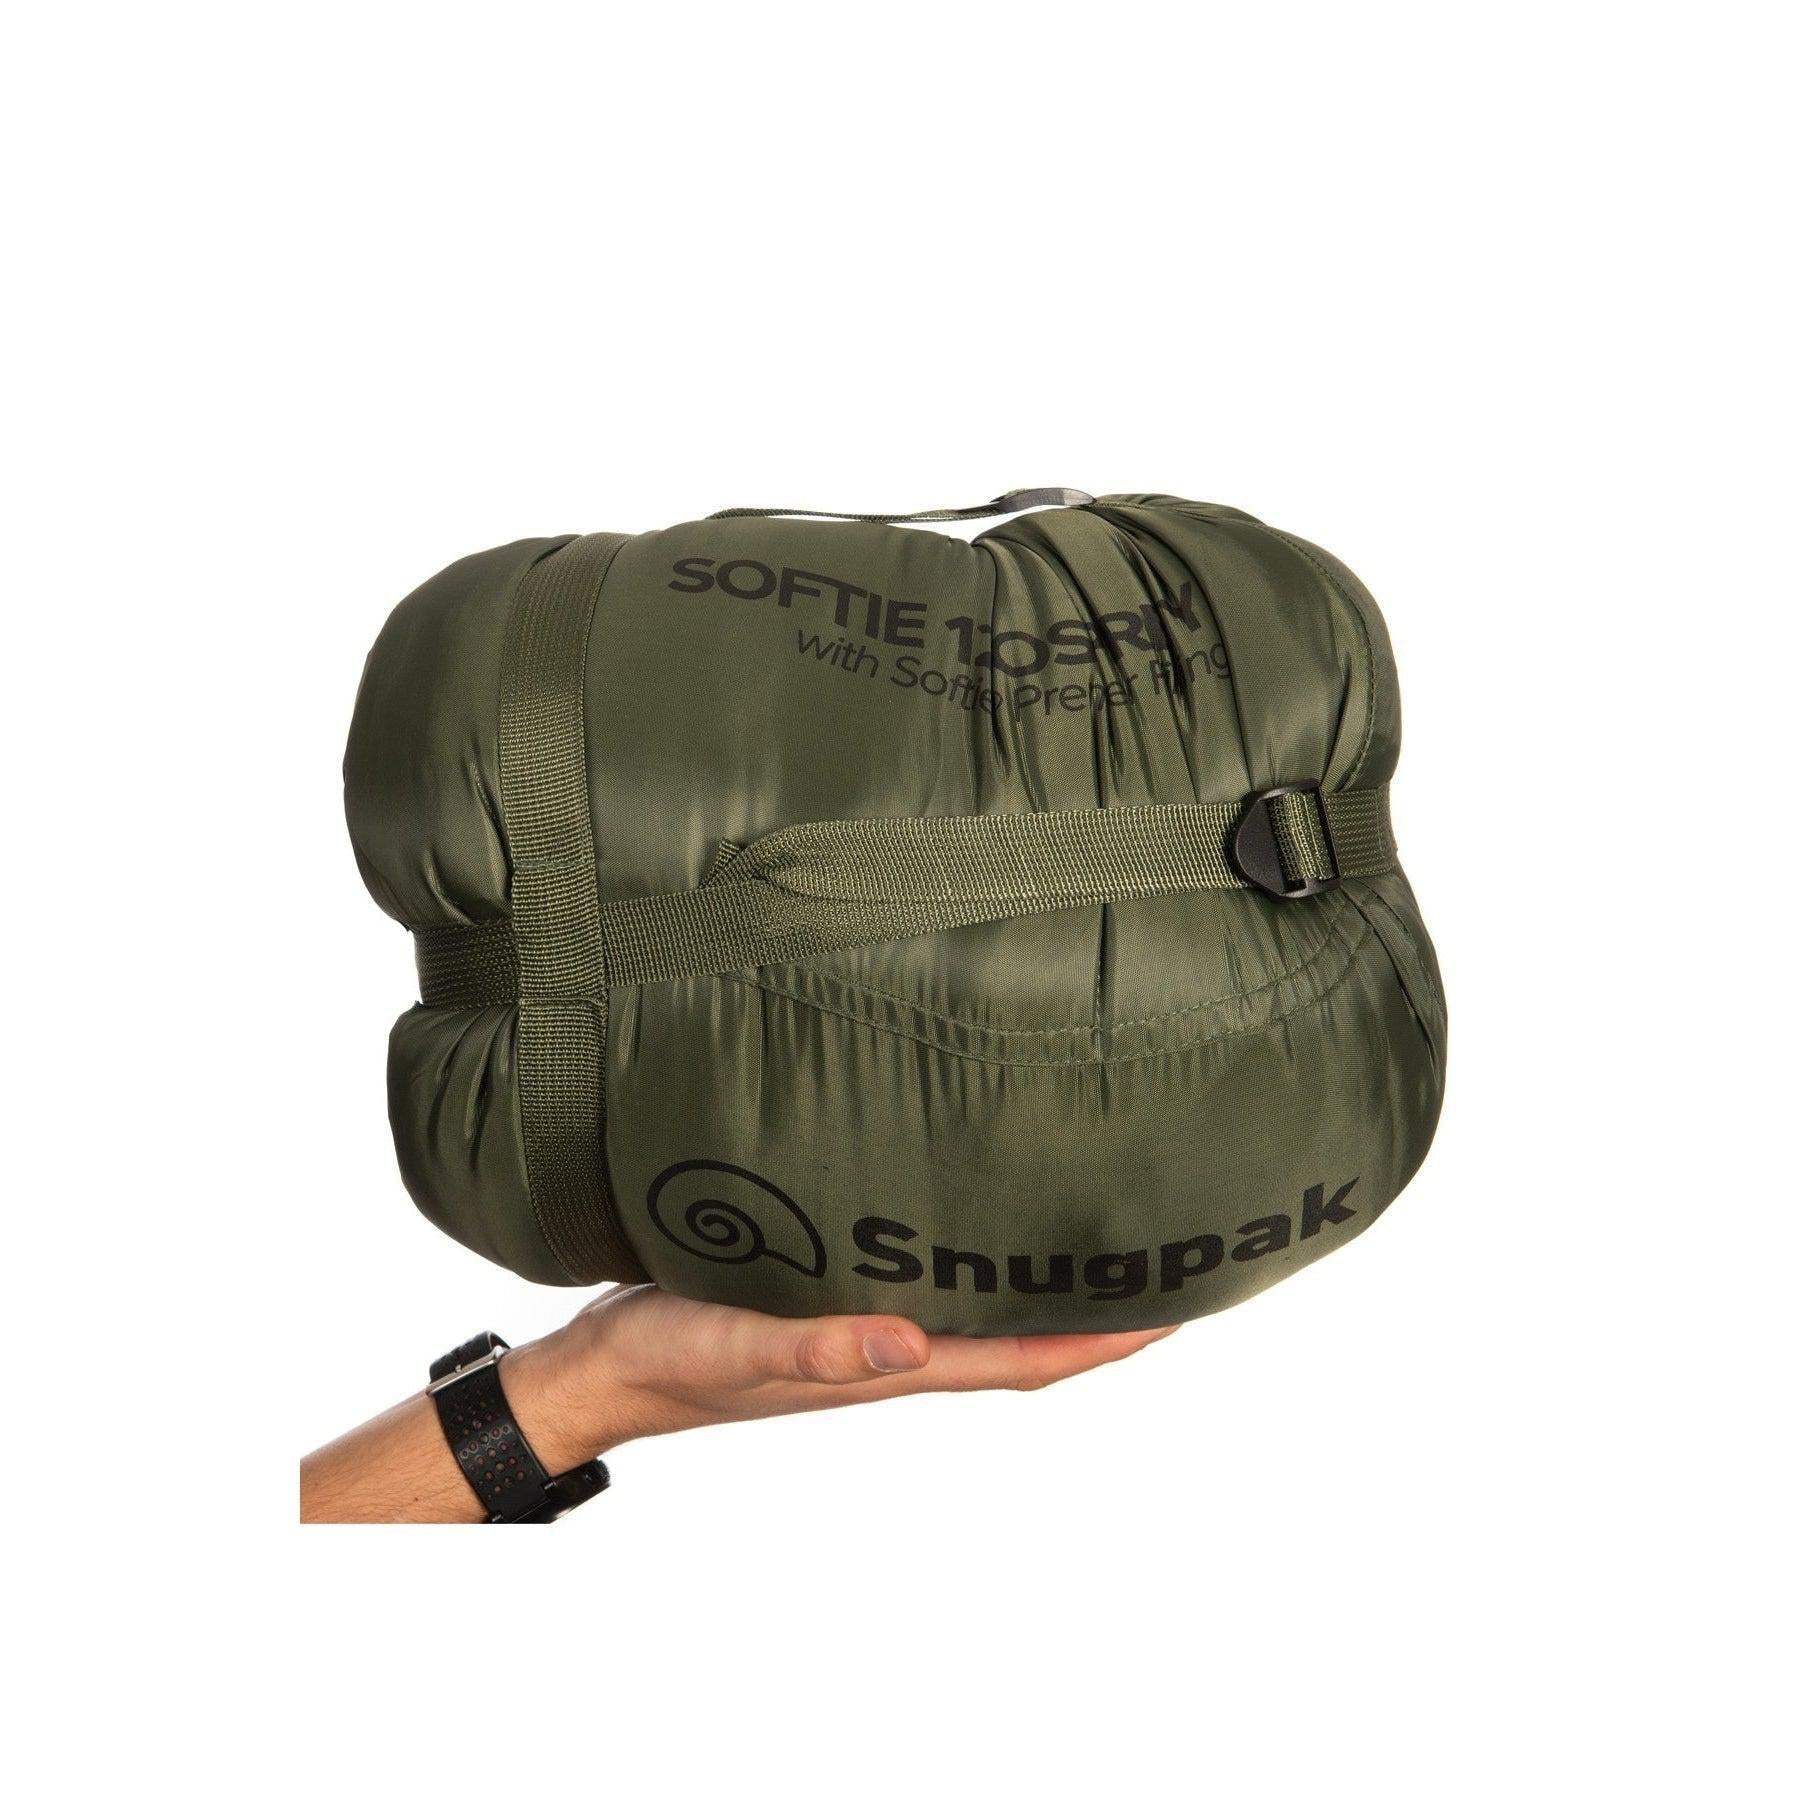 Snugpak Softie 12 Osprey Sleeping Bag - Olive -10°C To -15°C